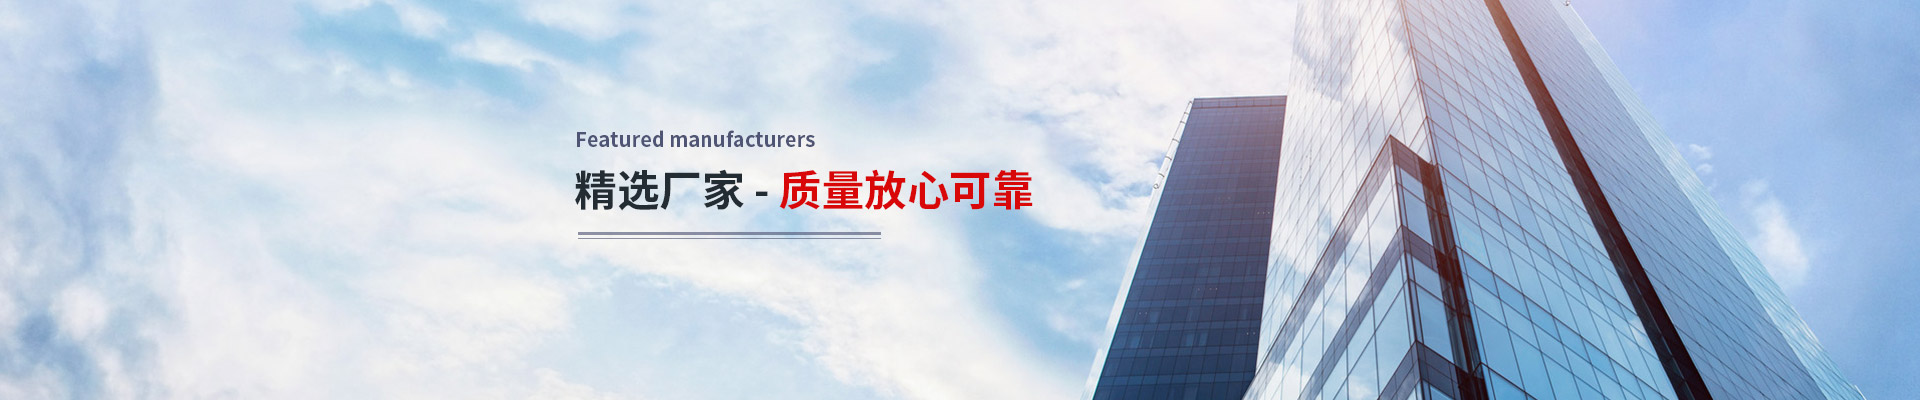 上海天陽鋼管有限公司公司介紹